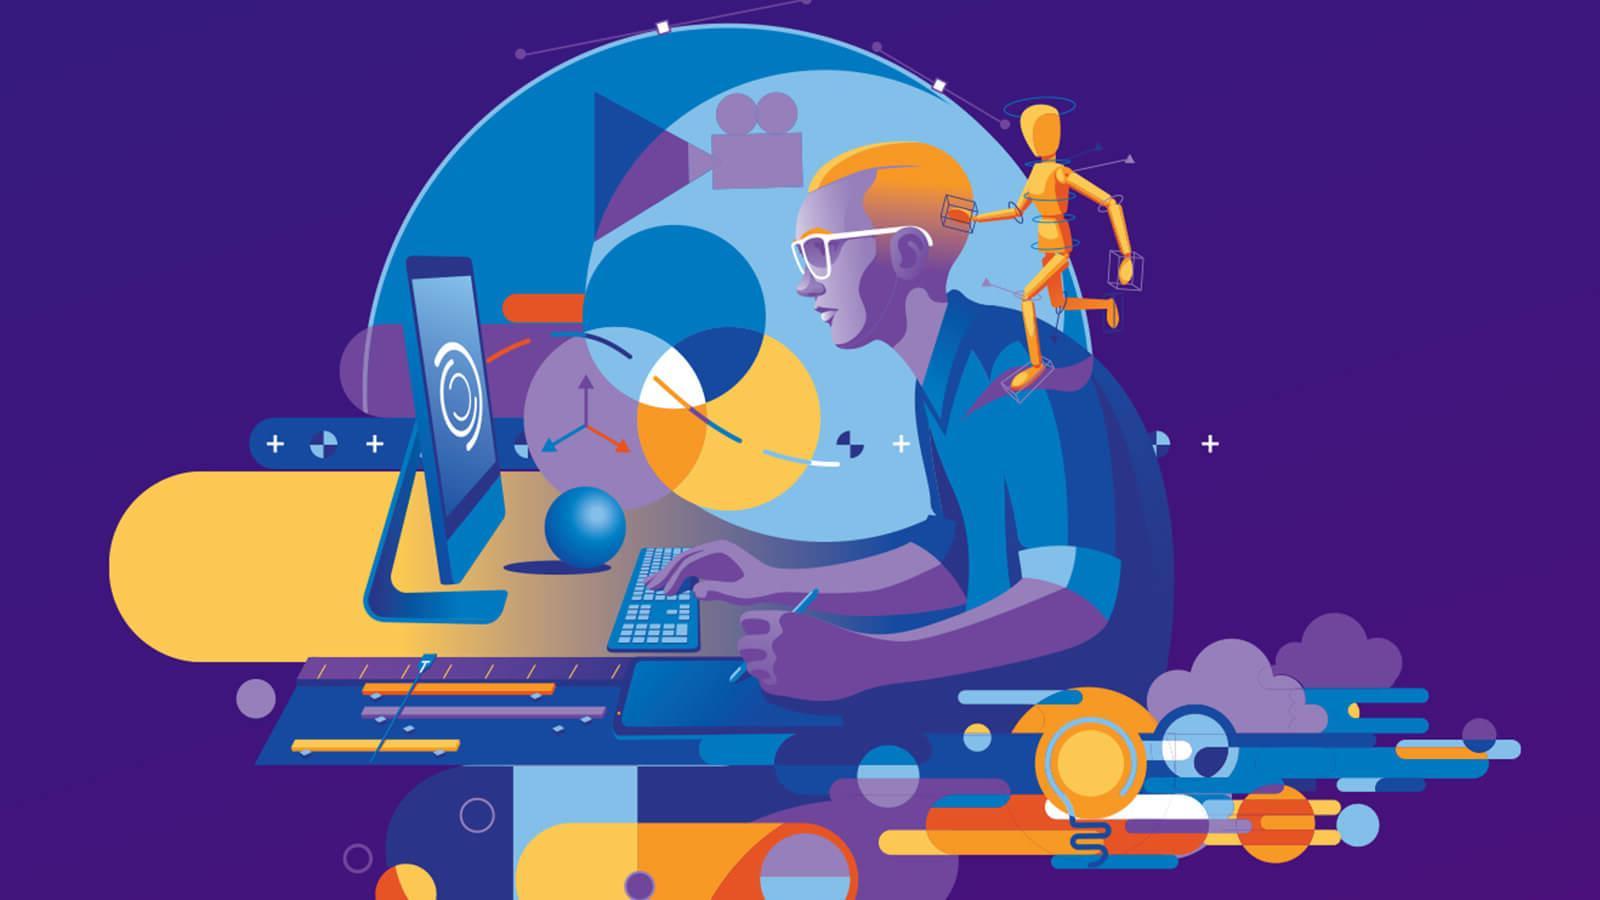 这幅紫色和蓝色调的现代图形配以黄色高光，描绘了一位平面设计师使用台式电脑和手写笔，周围环绕着拼贴画, 其中包括一个解剖模型, 箭头, 统治者, 云, 一个电影偶像.